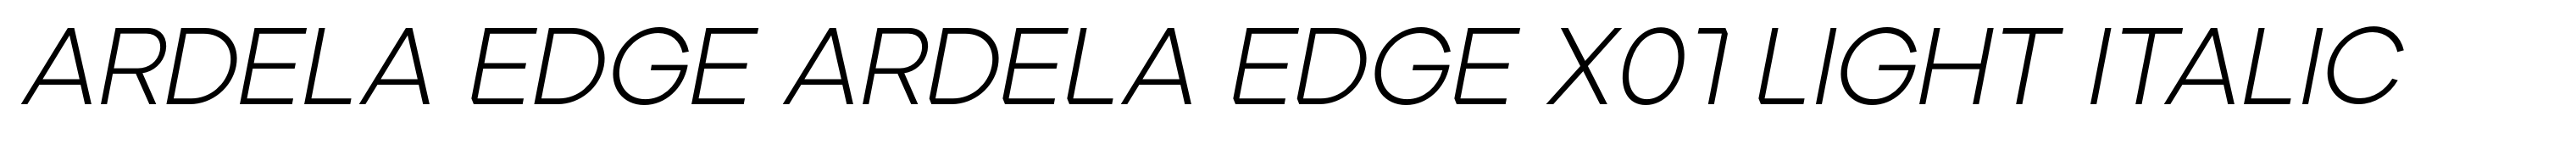 Ardela Edge ARDELA EDGE X01 Light Italic